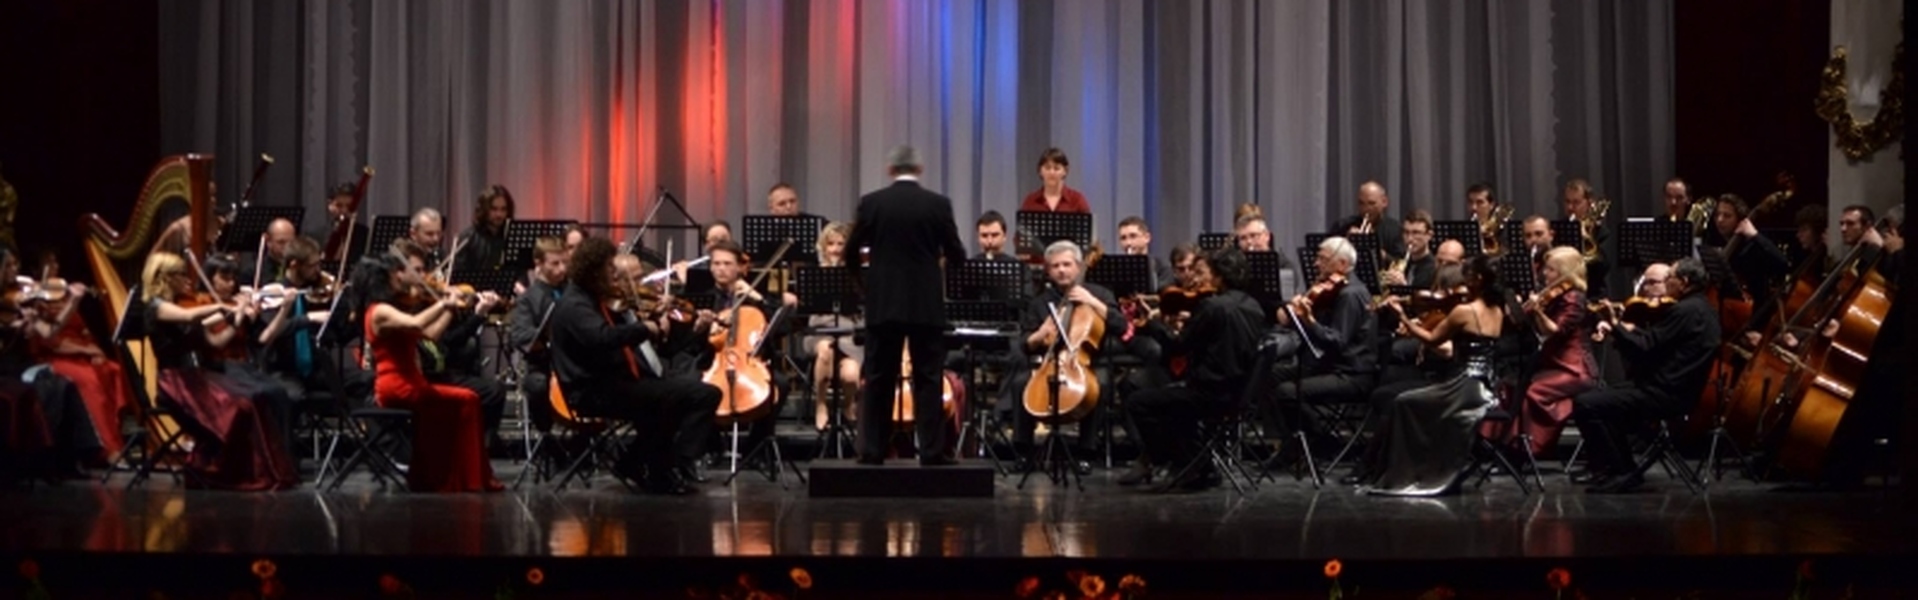 Strauss, újévi koncert, 2019